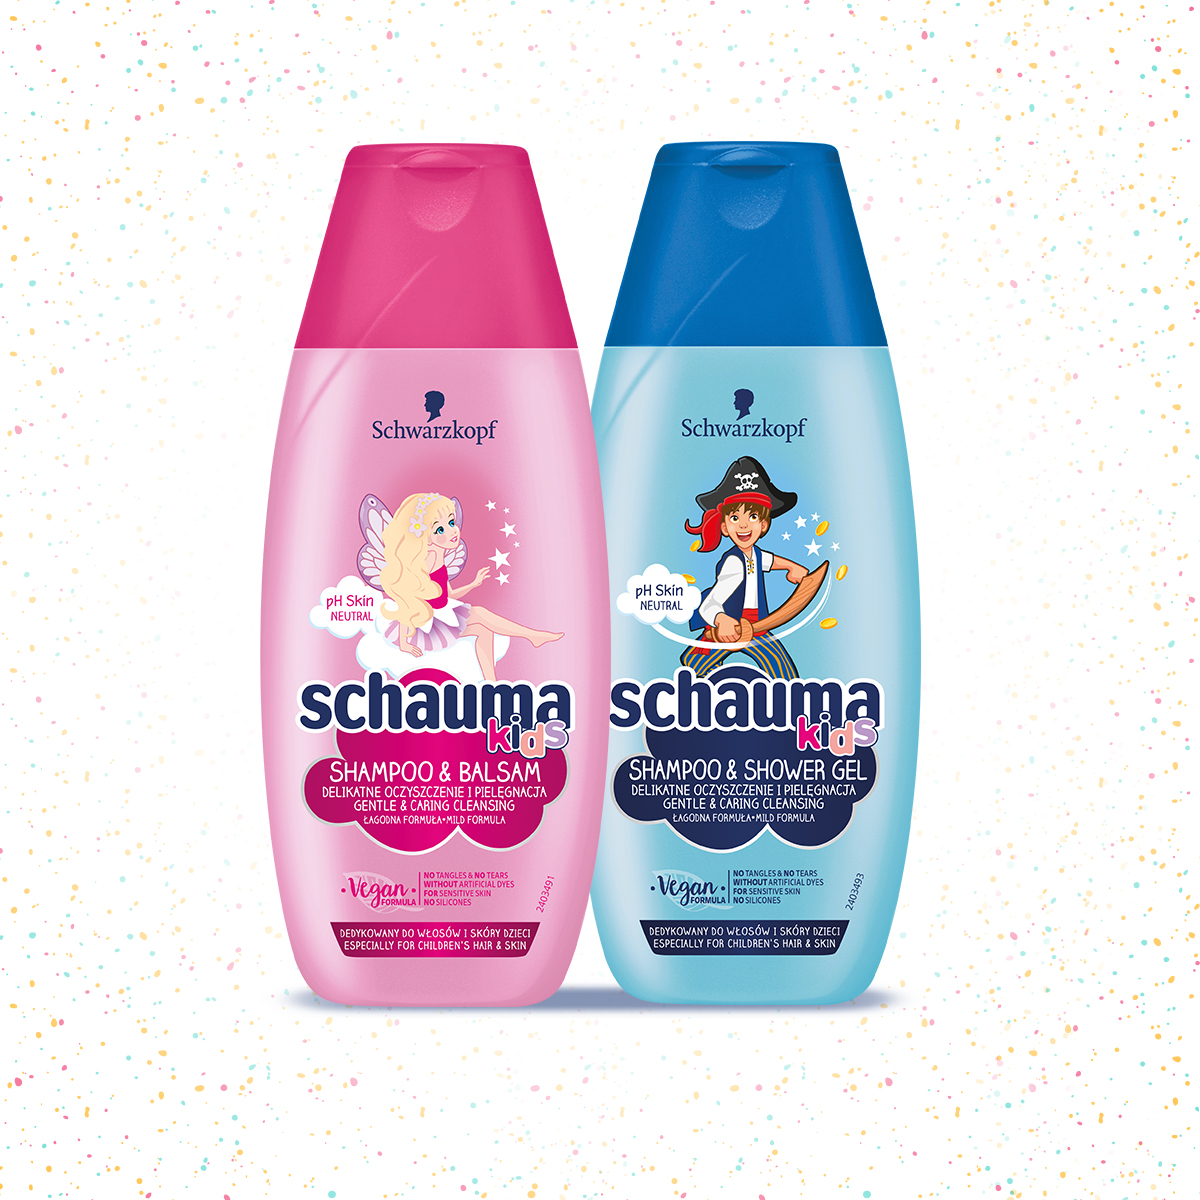 Schauma Kids zdobywa serca najmłodszych konsumentów!